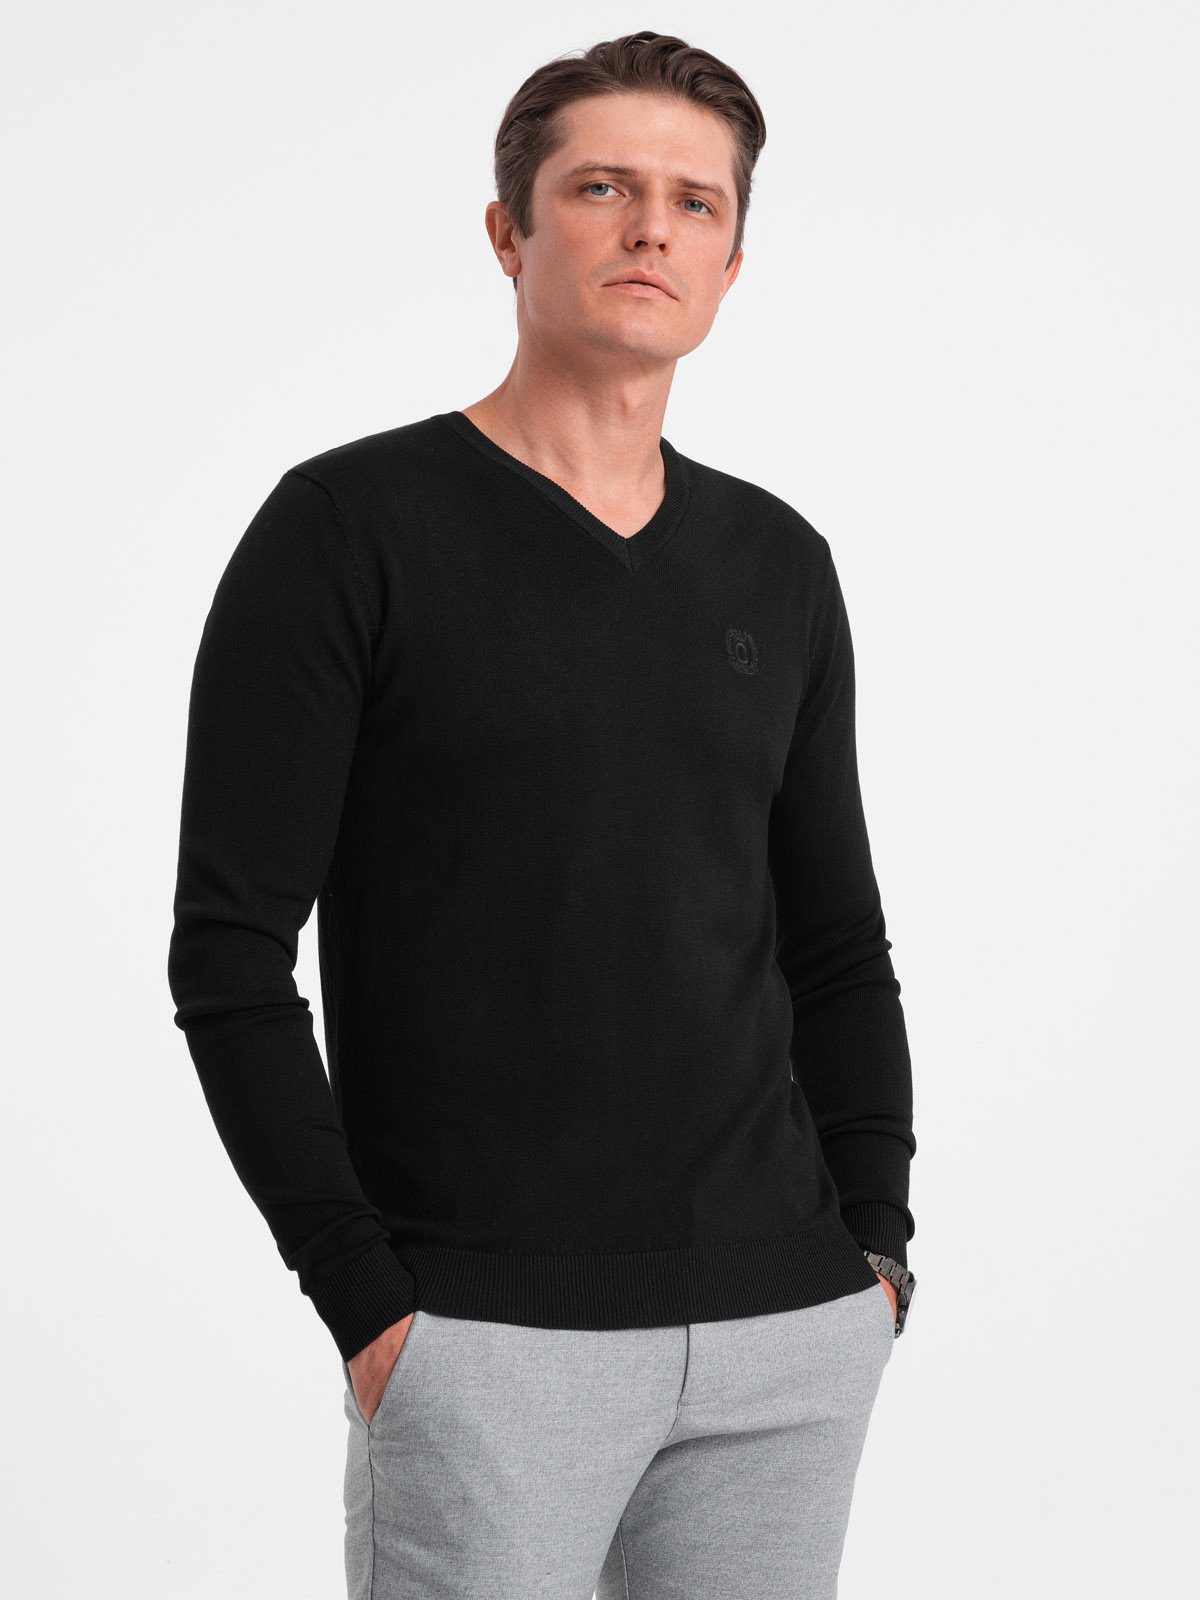 Elegant men's sweater with a v-neck - black V1 OM-SWBS V1 OM-SWBS - 0107